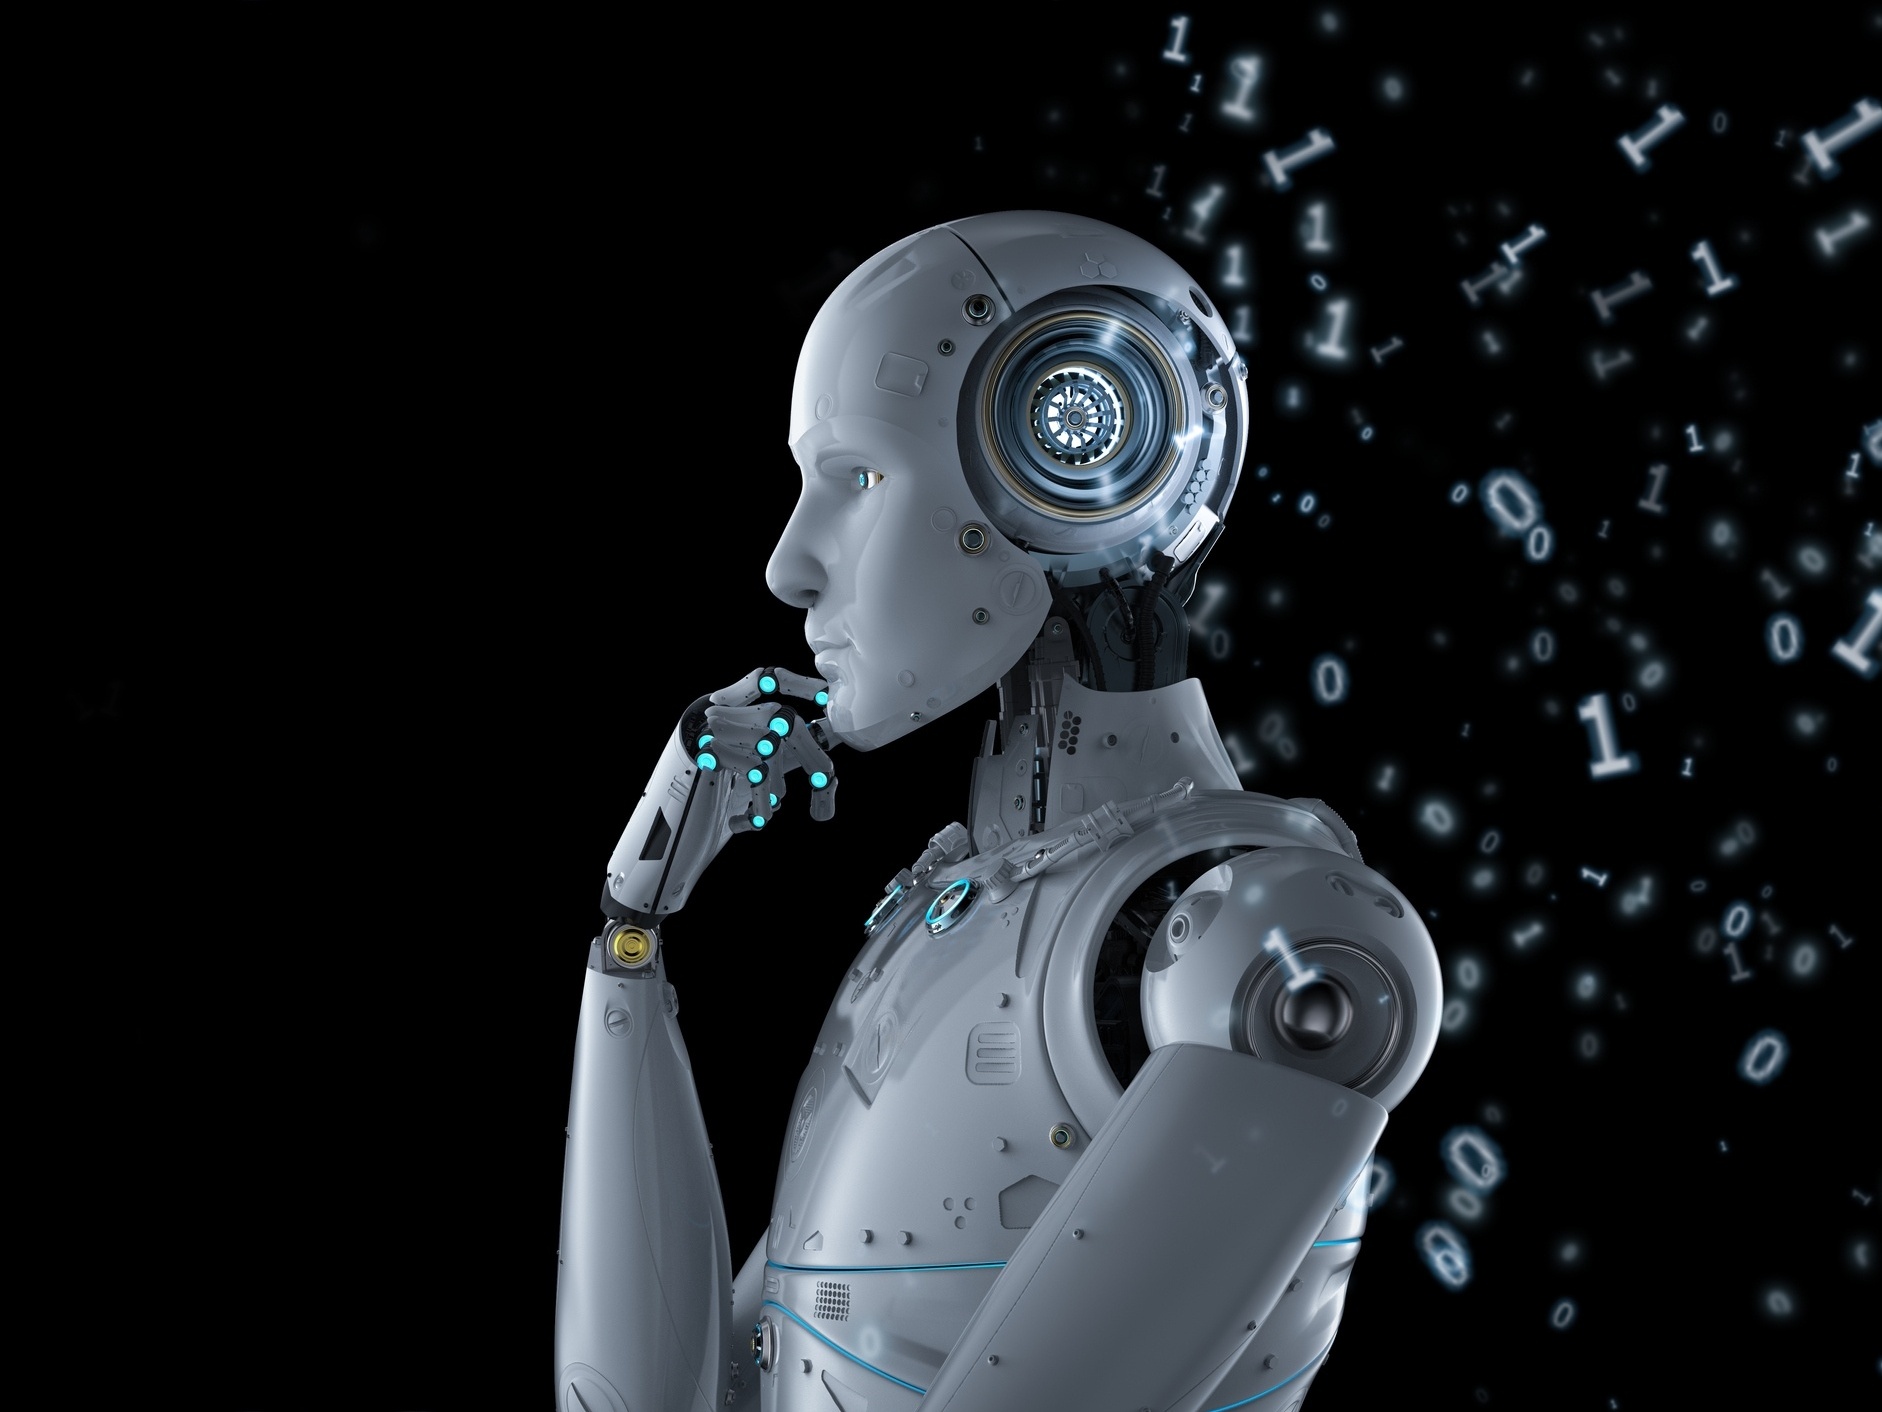 AlphaZero anuncia nova era da inteligência artificial - Estadão